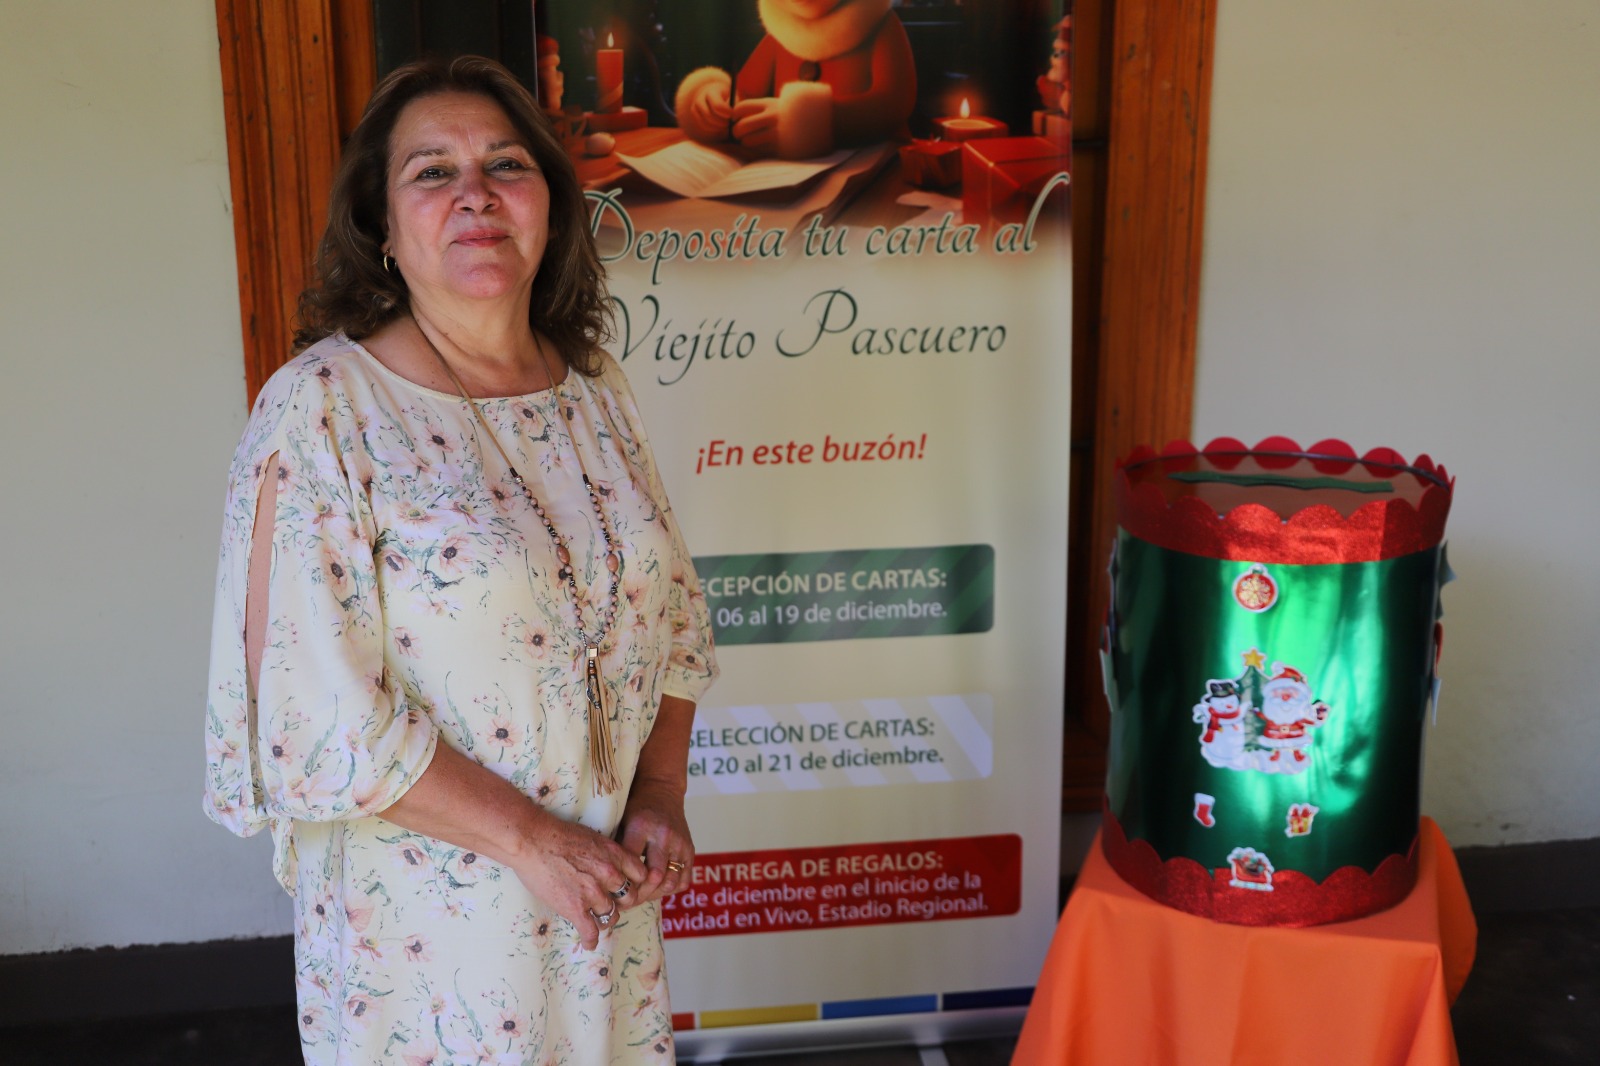 LOS ANDES: Municipio andino invita a niños y niñas de Los Andes a escribir cartas al Viejito Pascuero